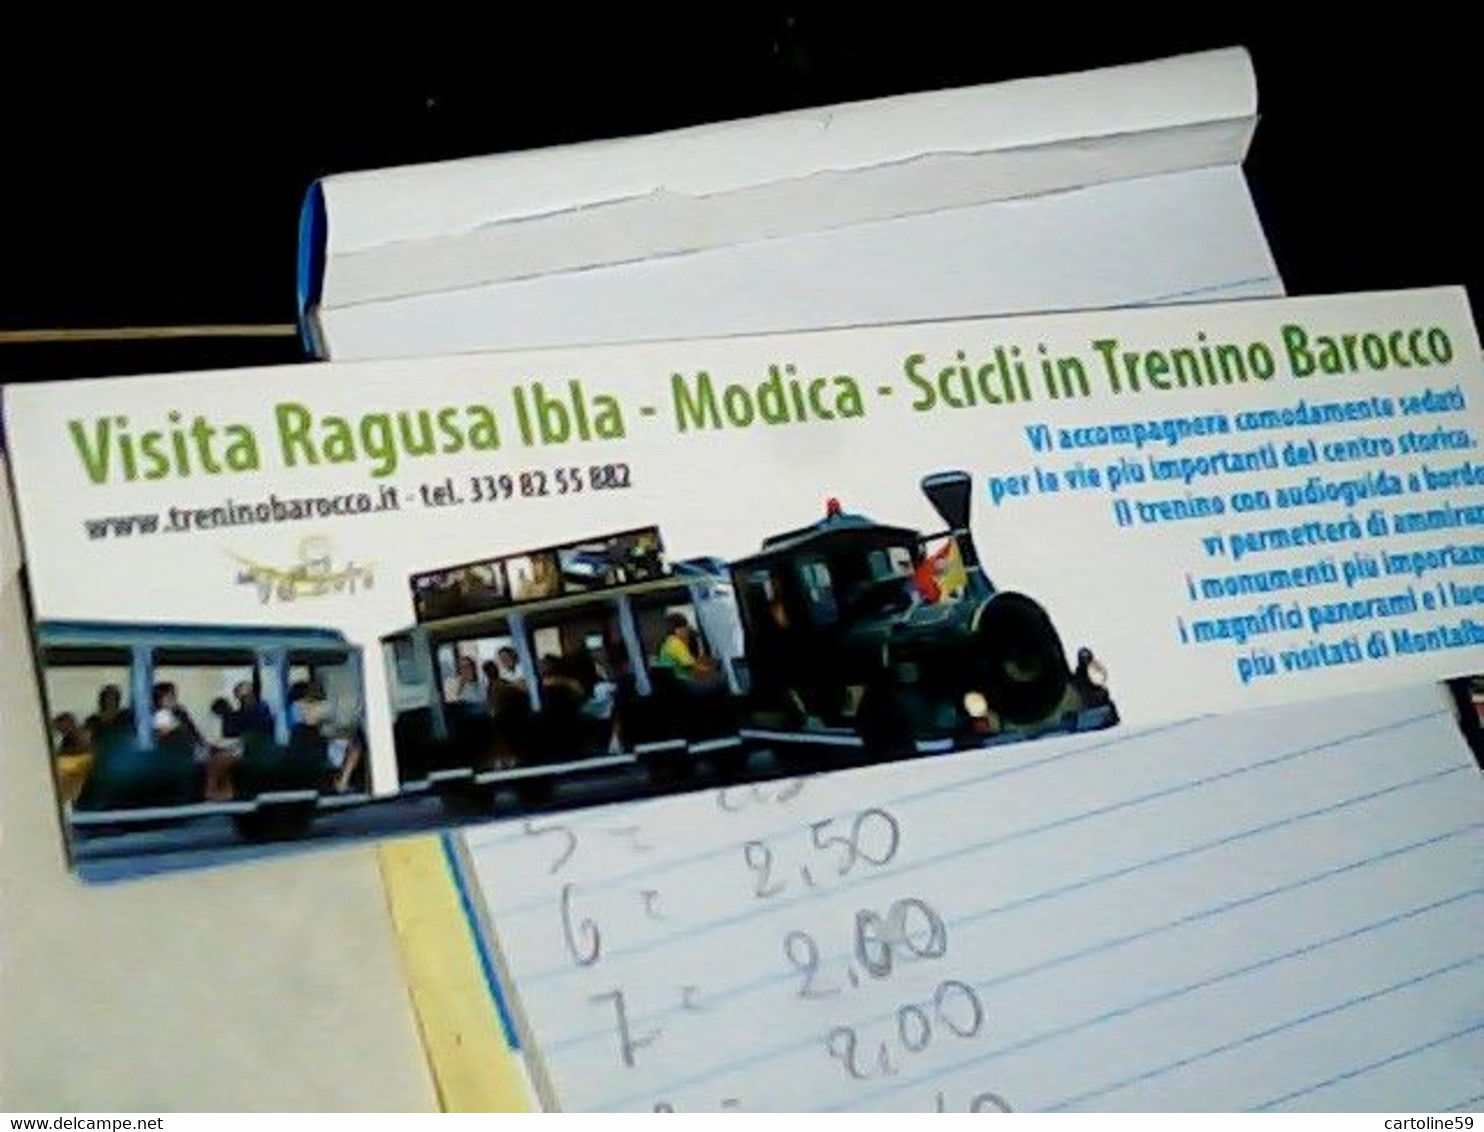 MODICA SCICLI RAGUSA IBLA TRENINO  CARTONCINO PUBBLICITARIO  TOUR IN TRANO BAROCCO N2010 IB6603 - Modica